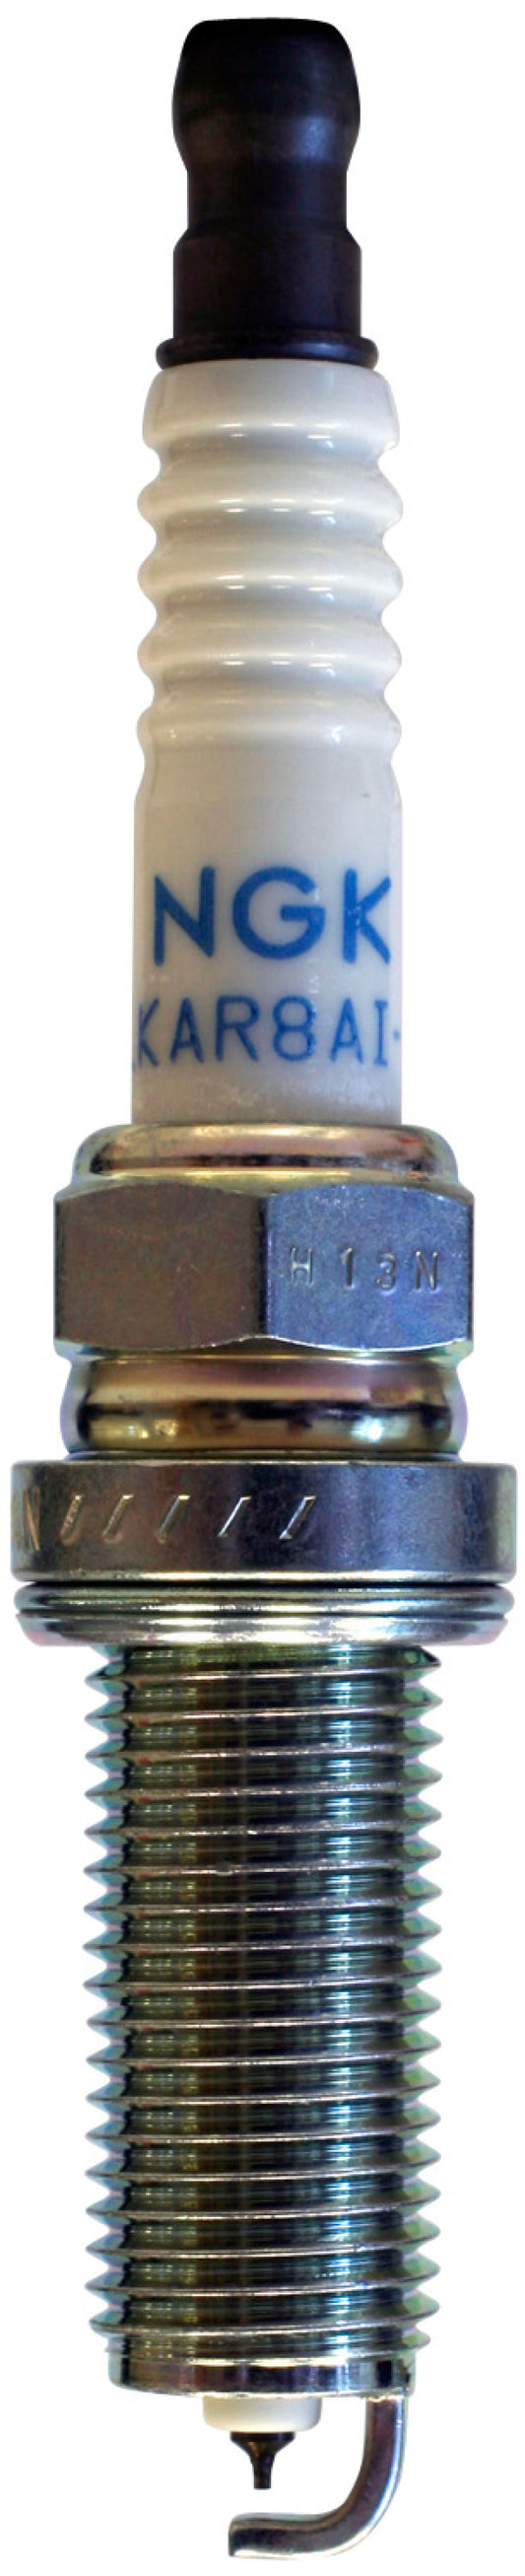 NGK Laser Iridium Spark Plug Box of 4 (LKAR9BI9)